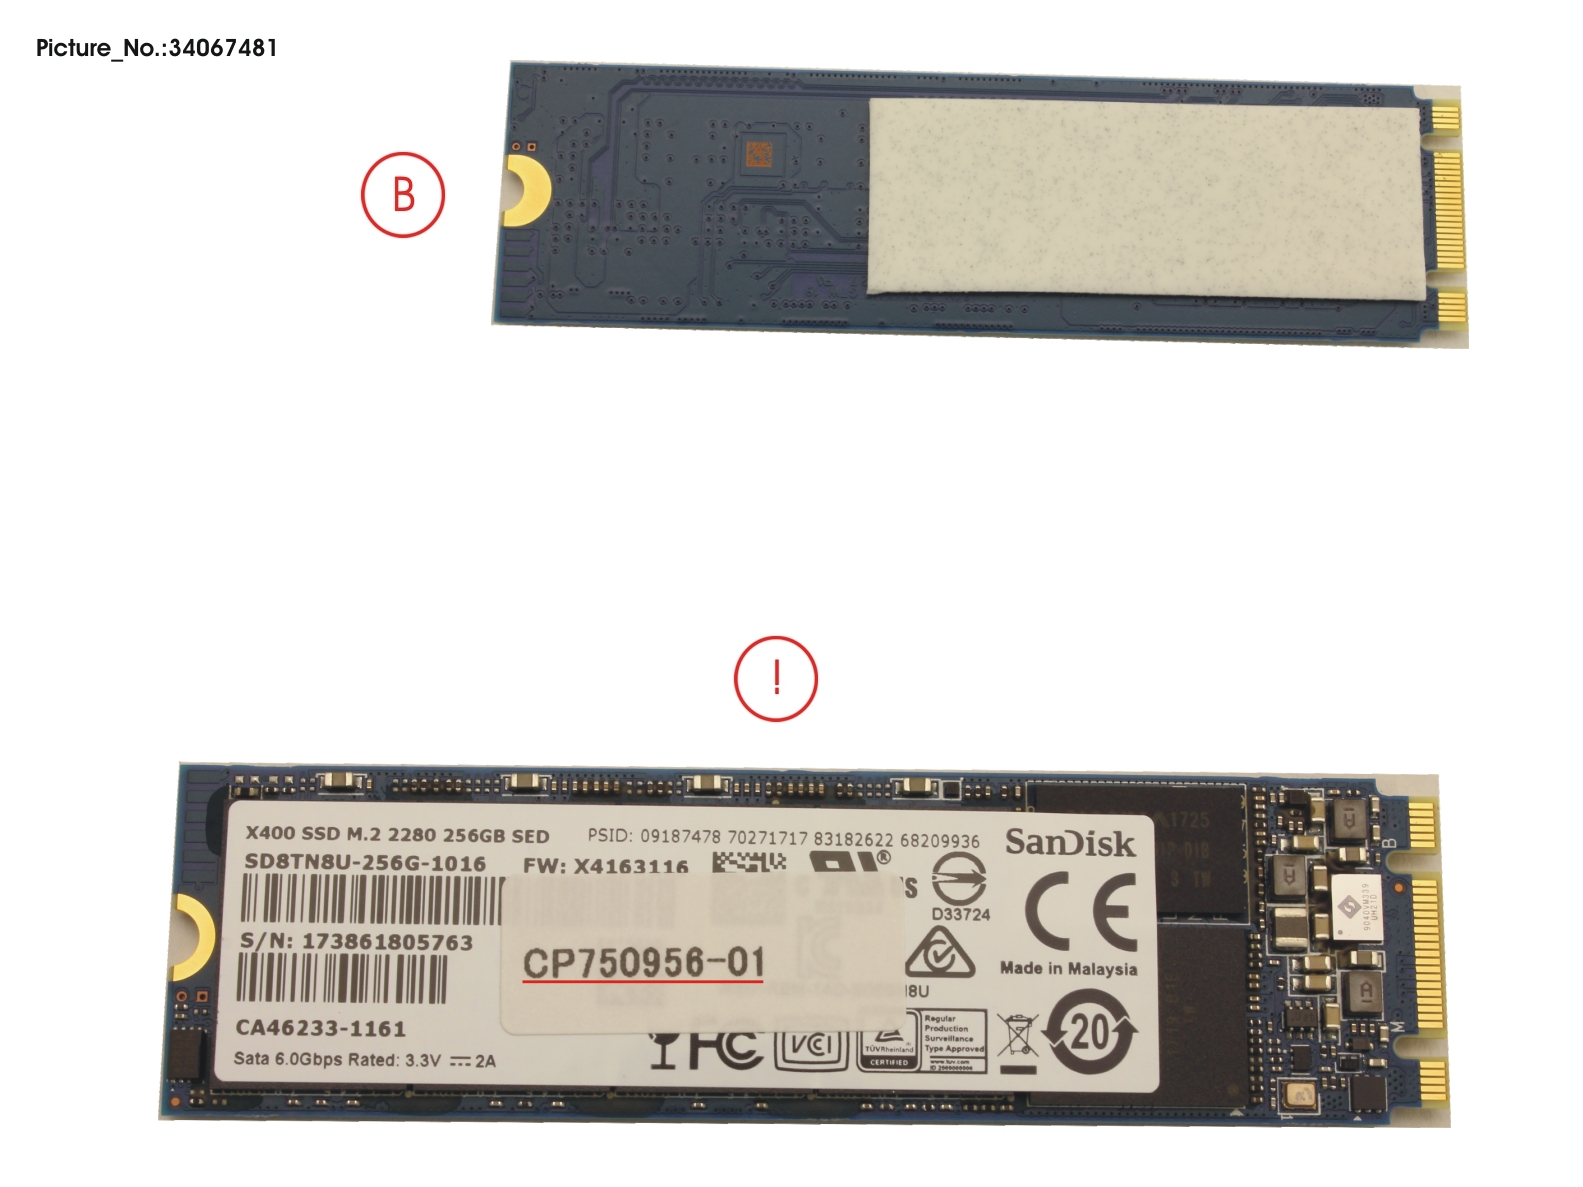 SSD S3 M.2 2280 256GB (FDE) W/RUBBER